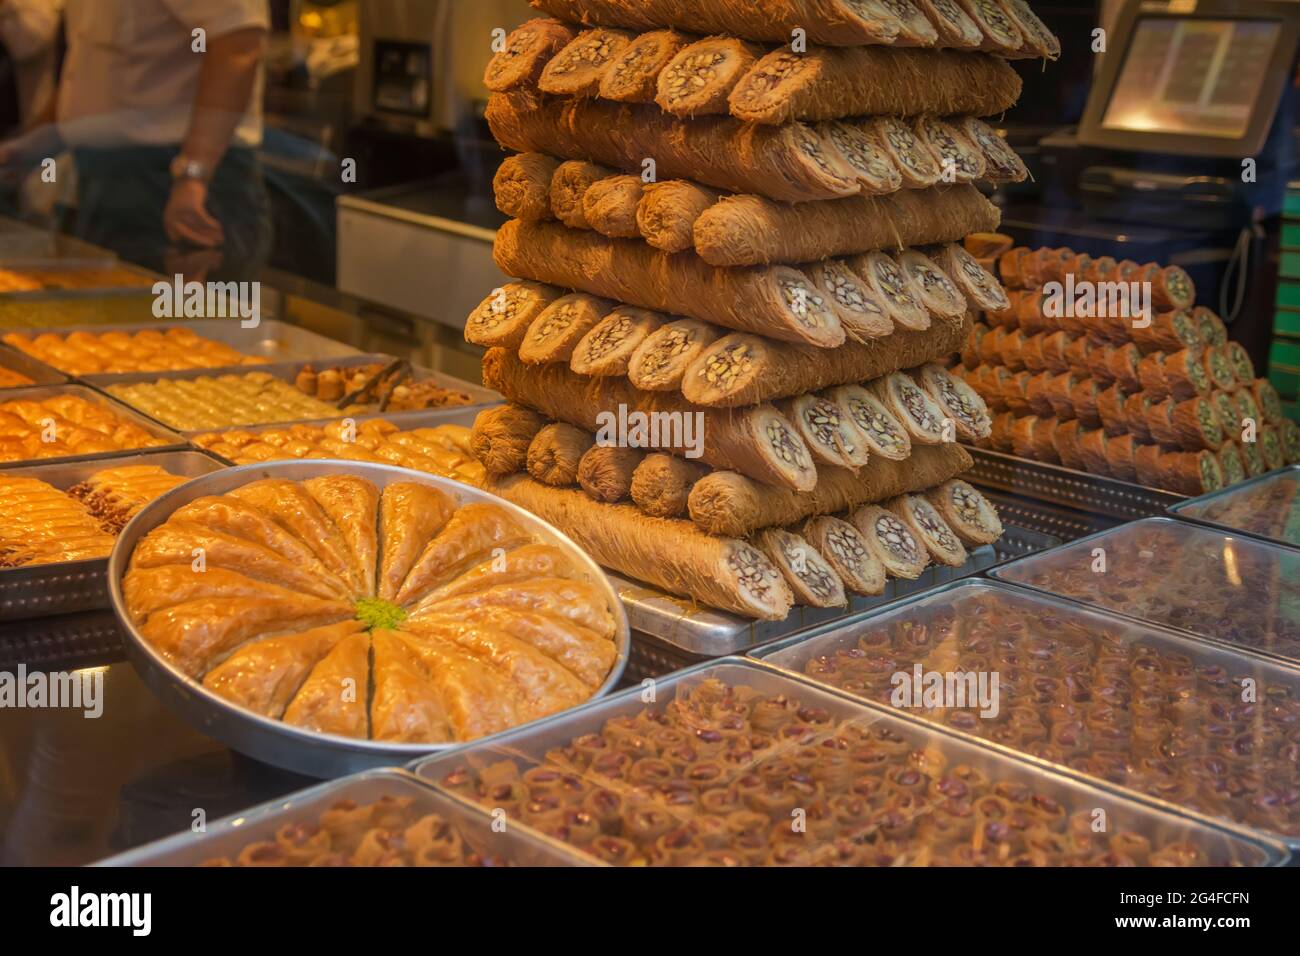 Délices turcs dans le magasin, marché aux épices, Istanbul, Turquie. Desserts Baklava - pâtisseries sucrées traditionnelles Banque D'Images